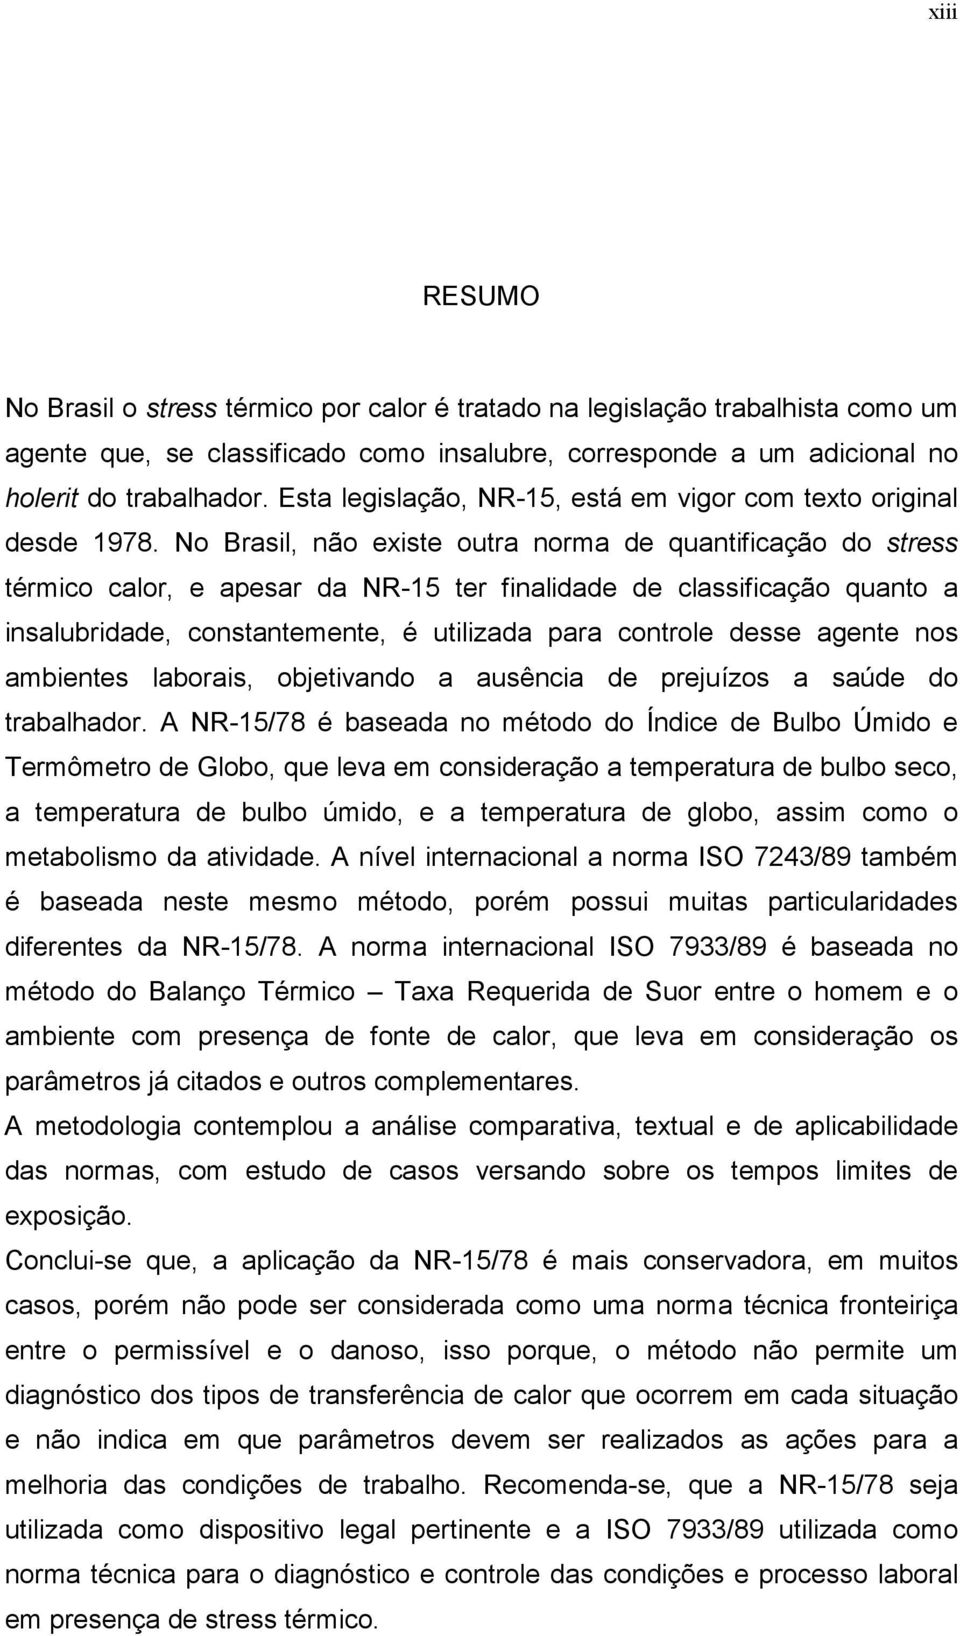 No Brasil, não existe outra norma de quantificação do stress térmico calor, e apesar da NR-15 ter finalidade de classificação quanto a insalubridade, constantemente, é utilizada para controle desse